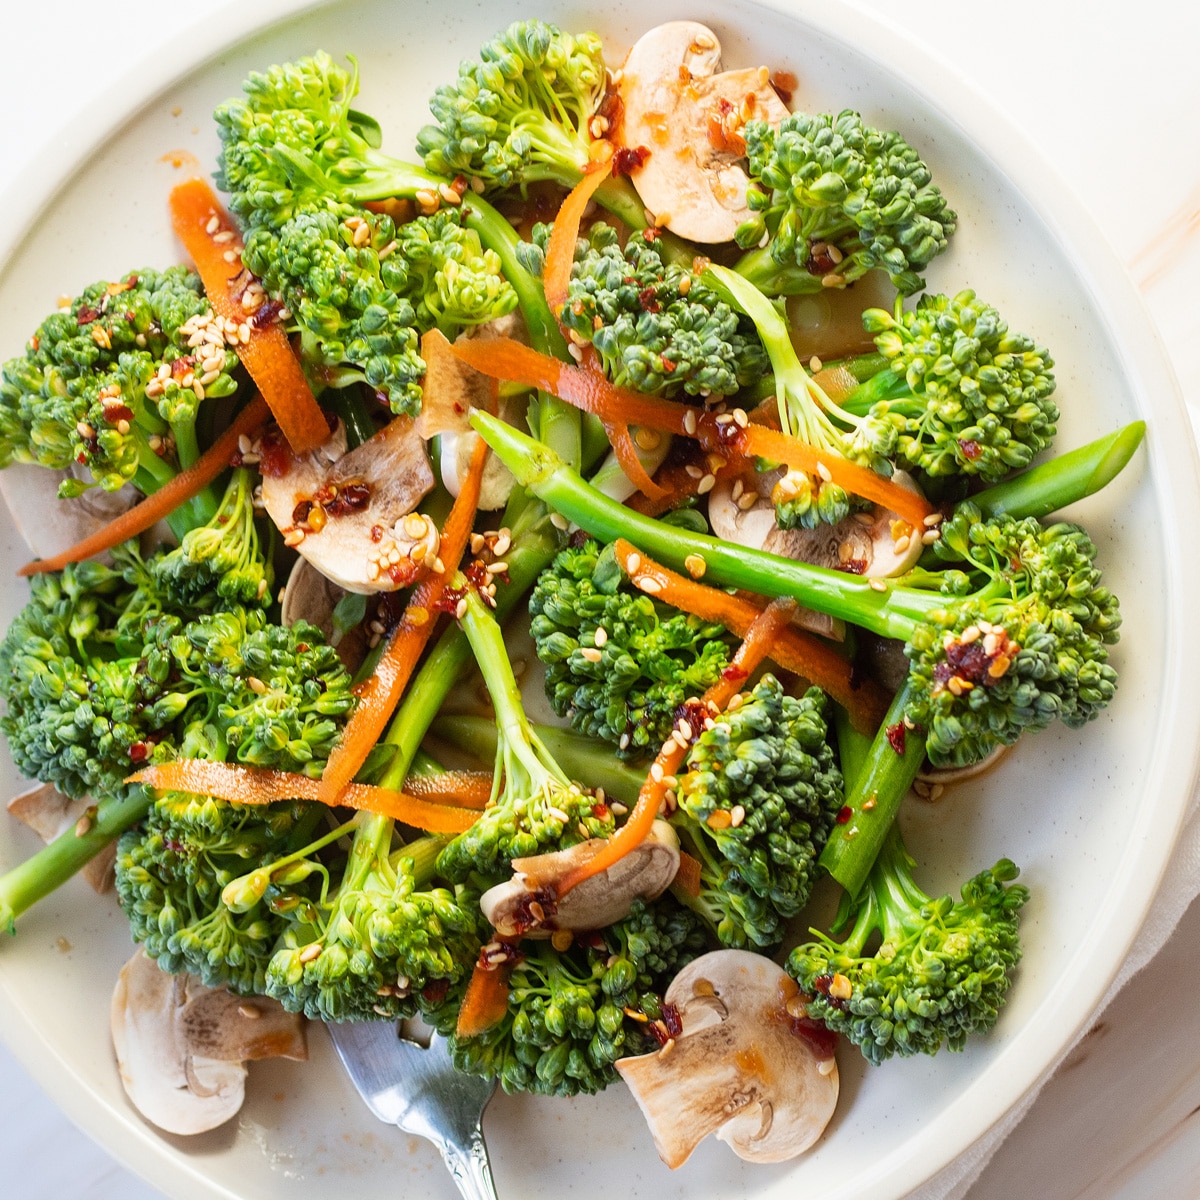 Салат брокколини на белой тарелке с грибами, бритой морковью и легкой азиатской заправкой.